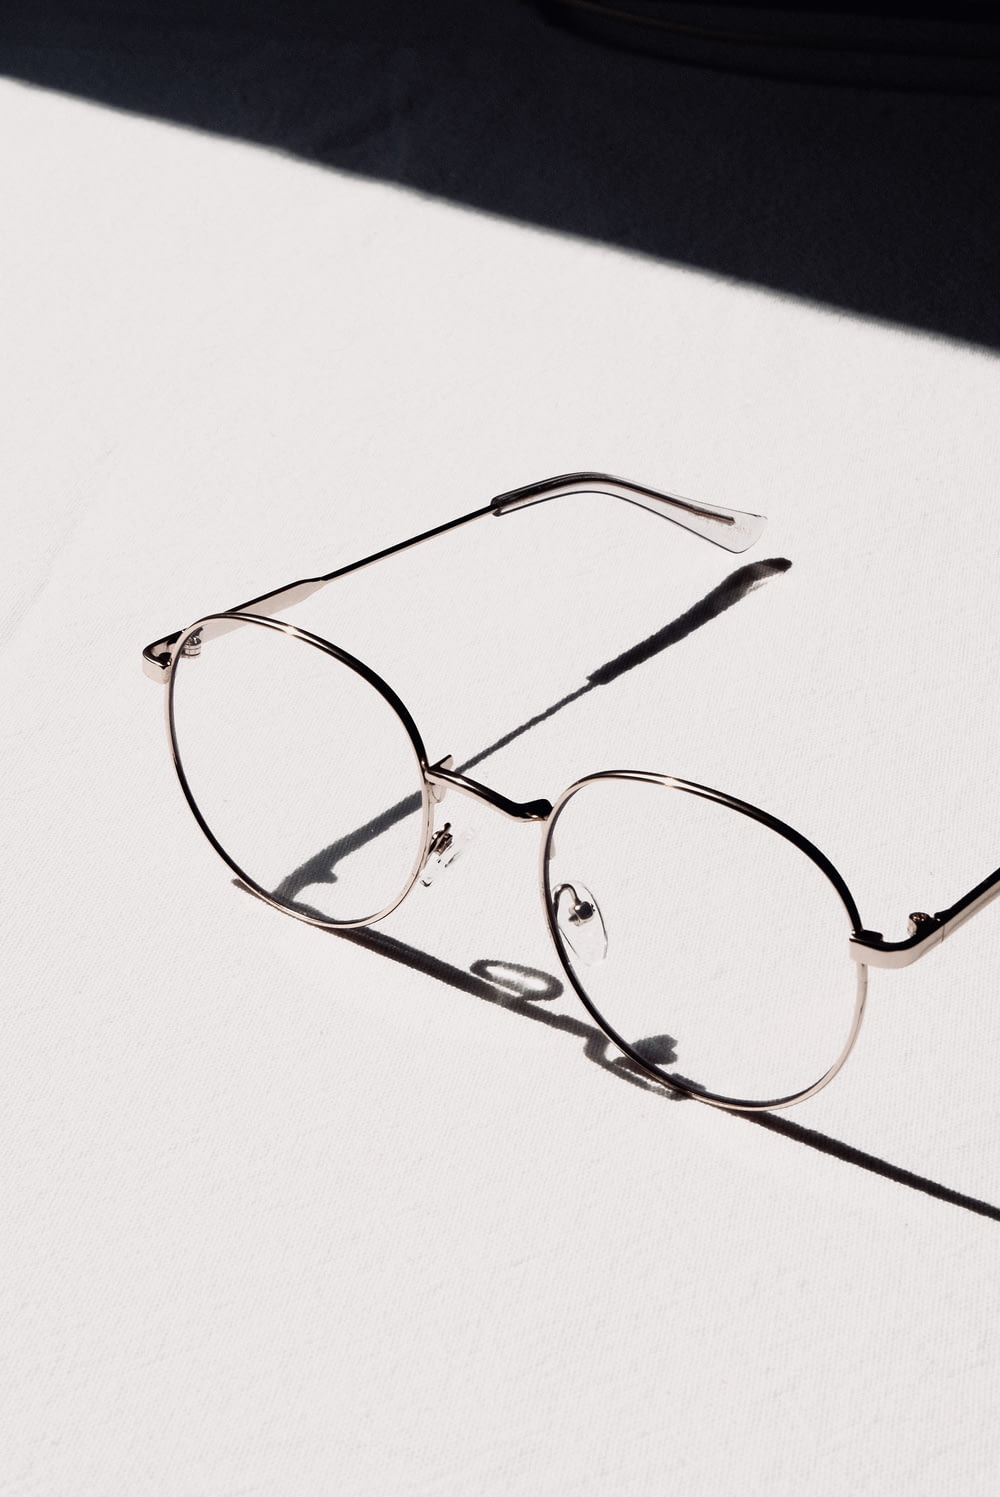 silver framed eyeglasses on white table